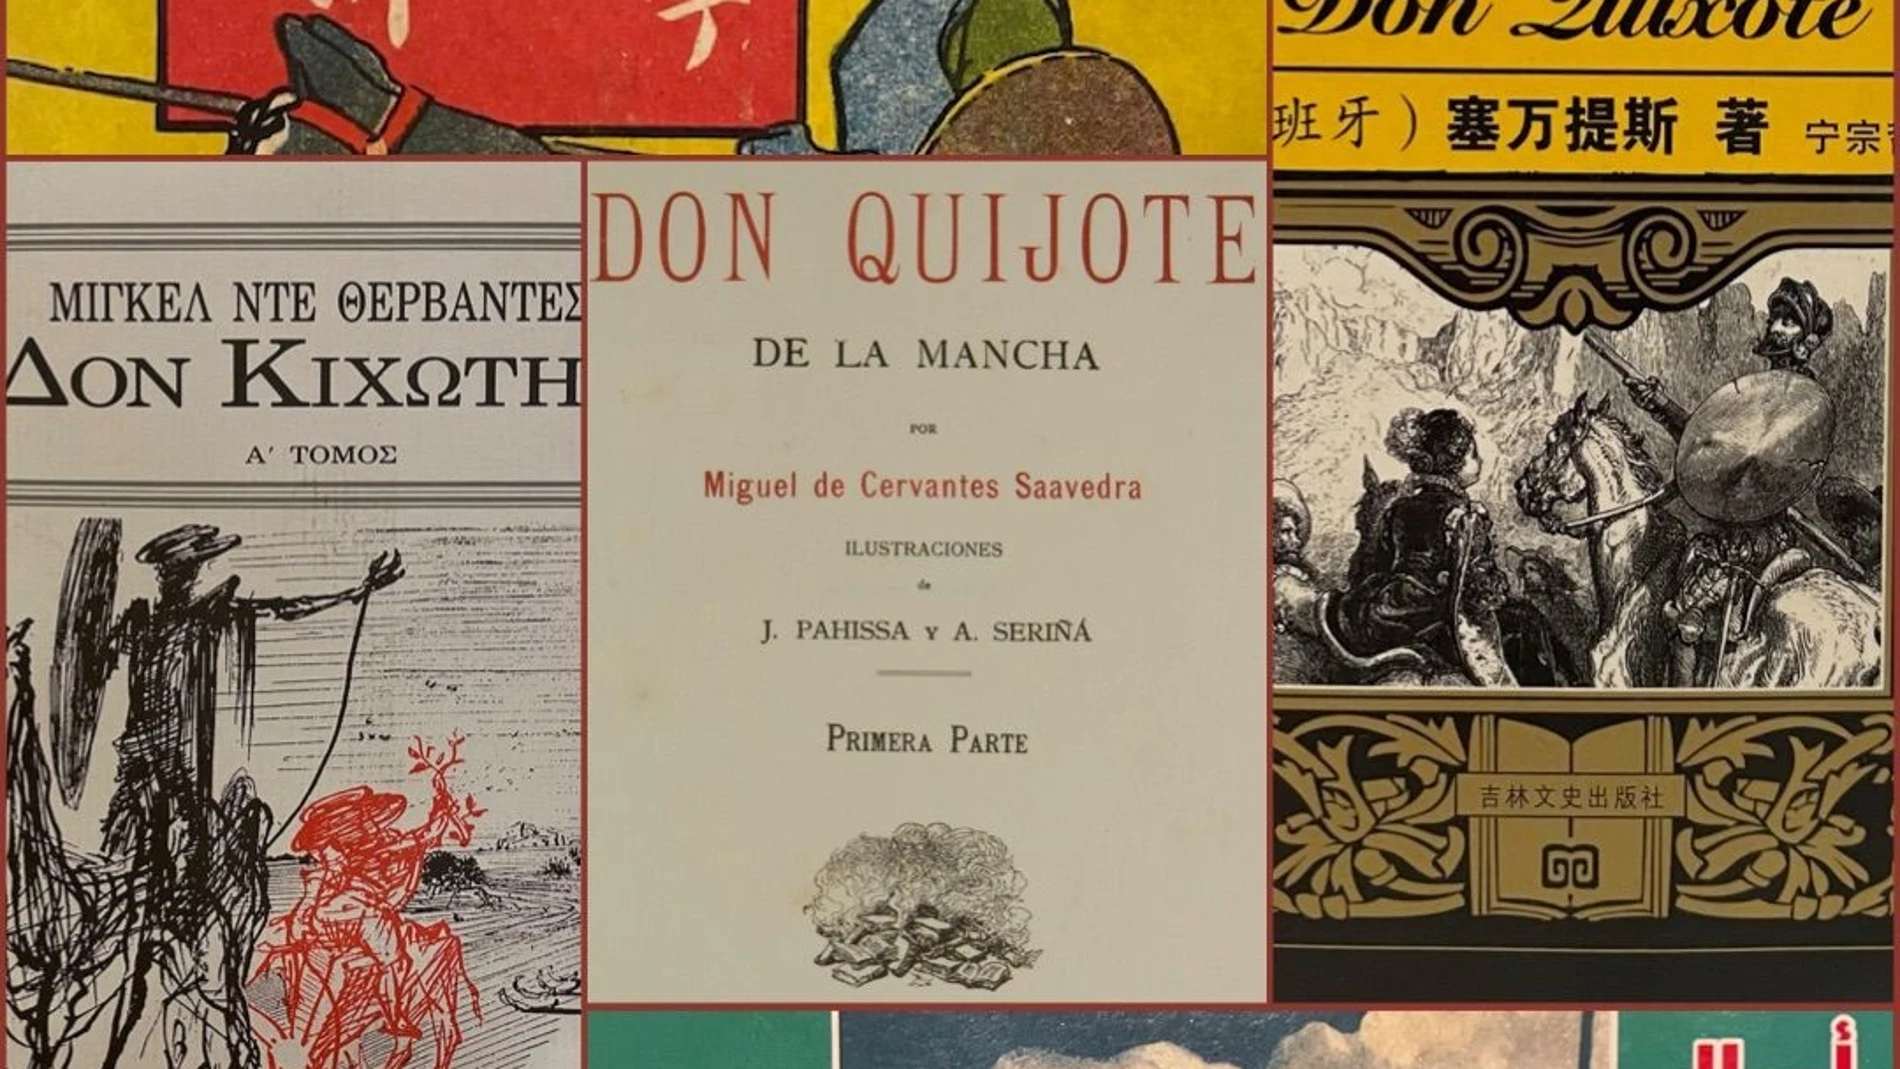 Cultura.- La Biblioteca Valenciana exhibe fondos de su colección cervantina para conmemorar el Día del Libro